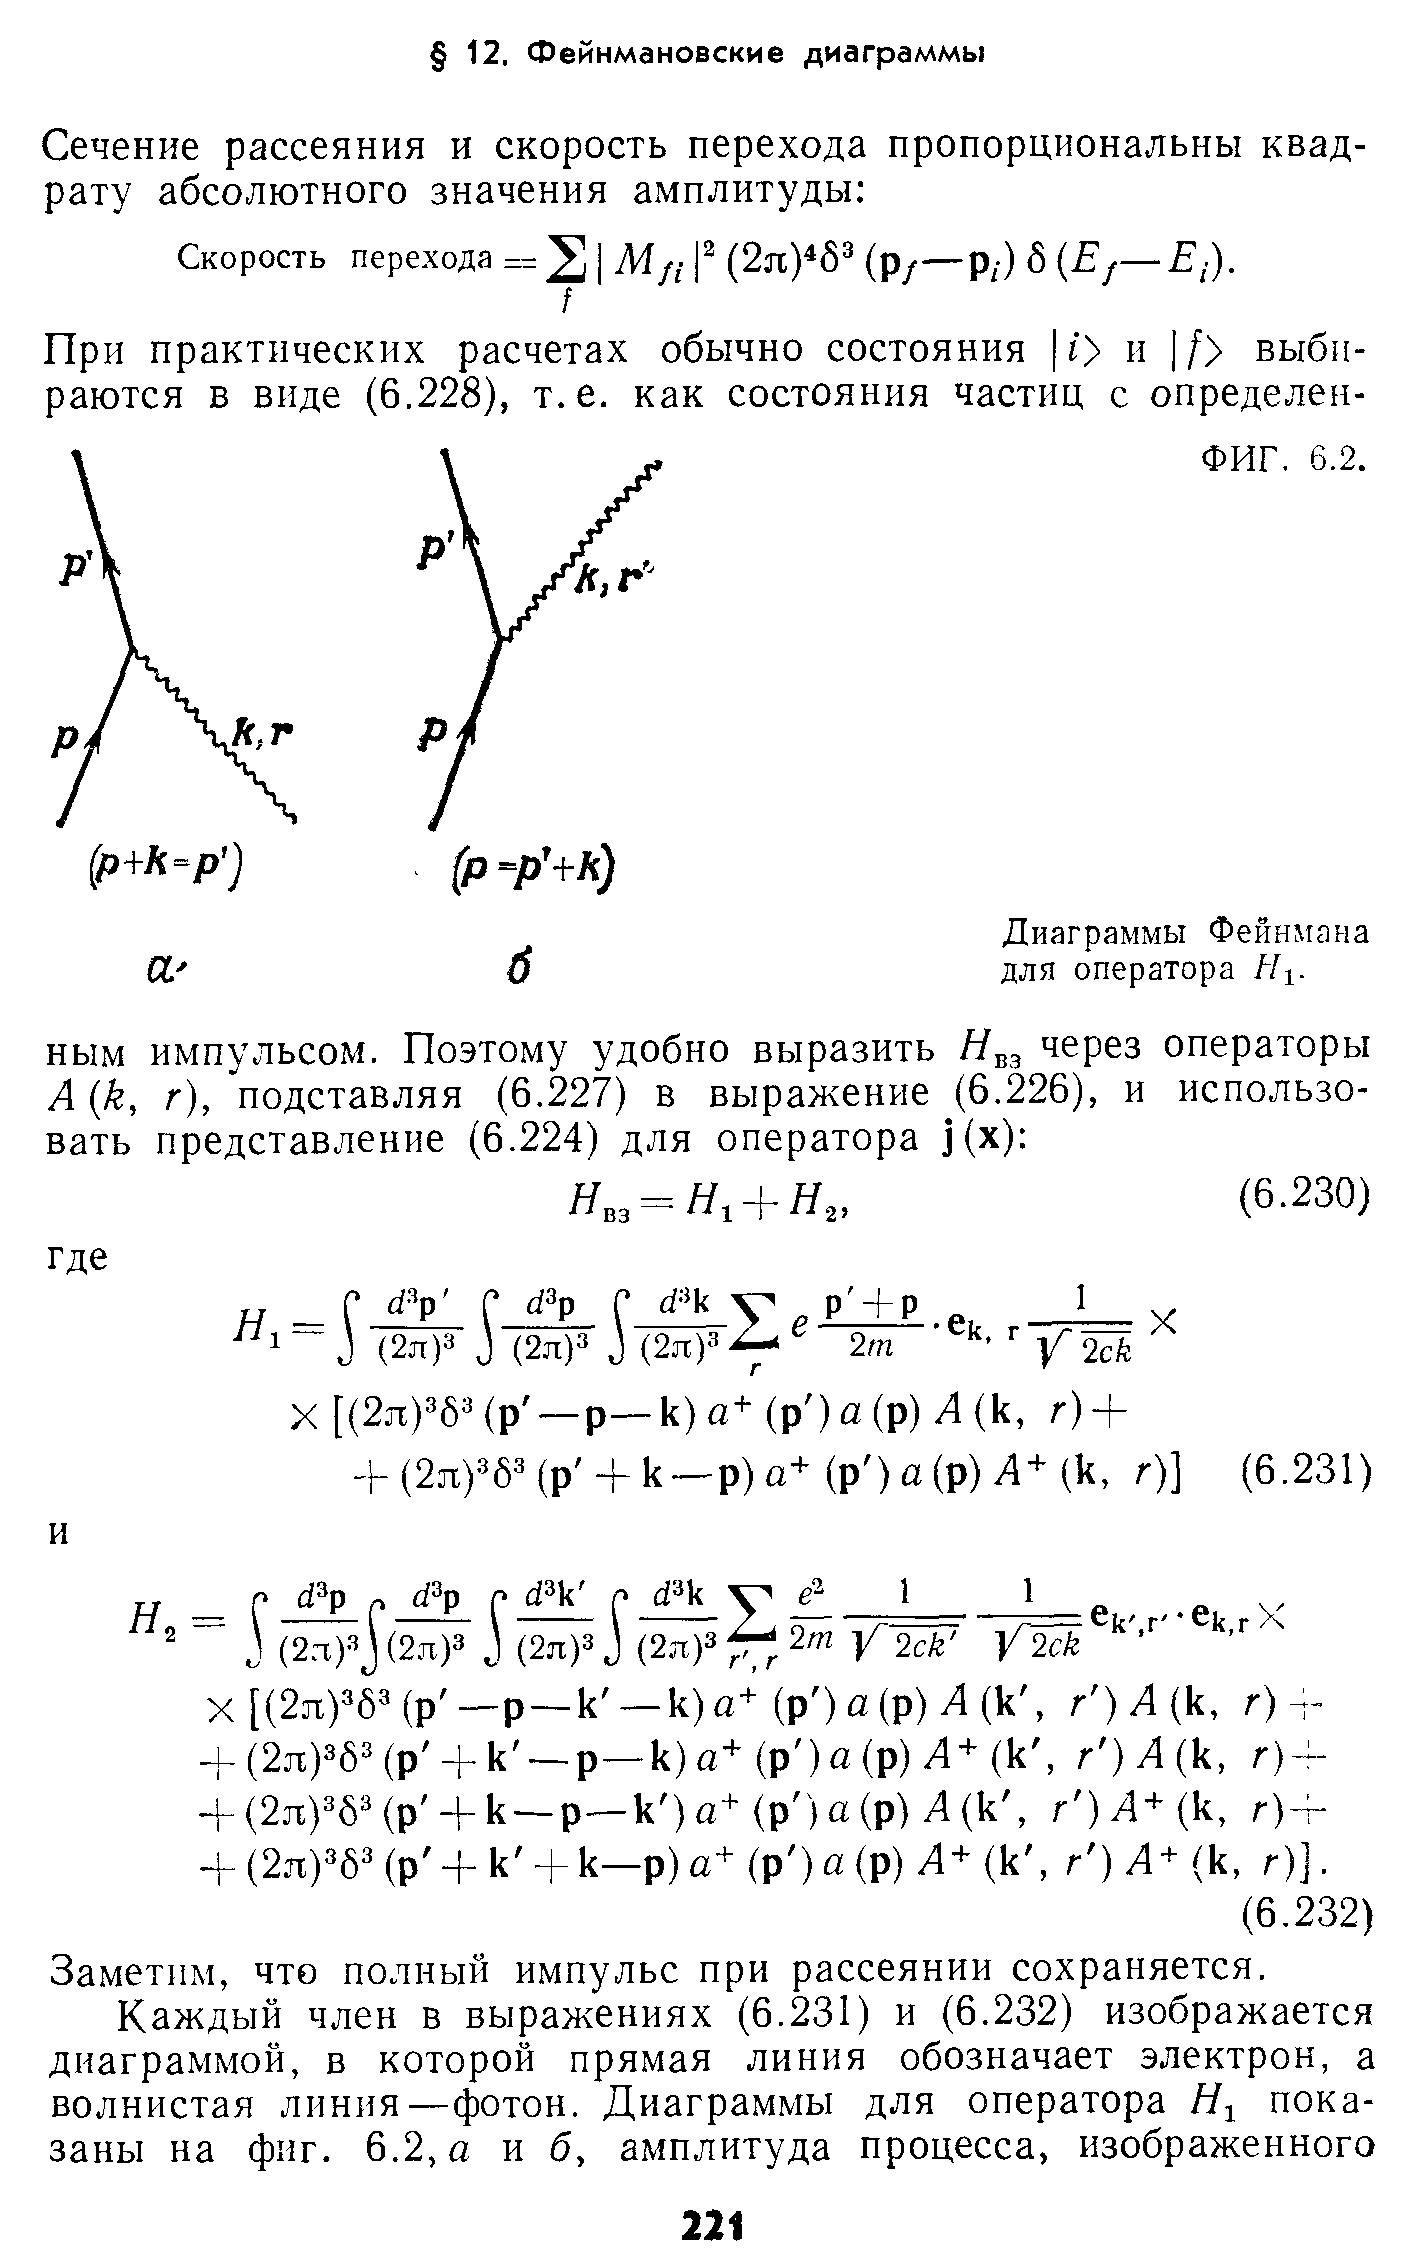 Диаграммы Фейнмана для оператора Я,.
